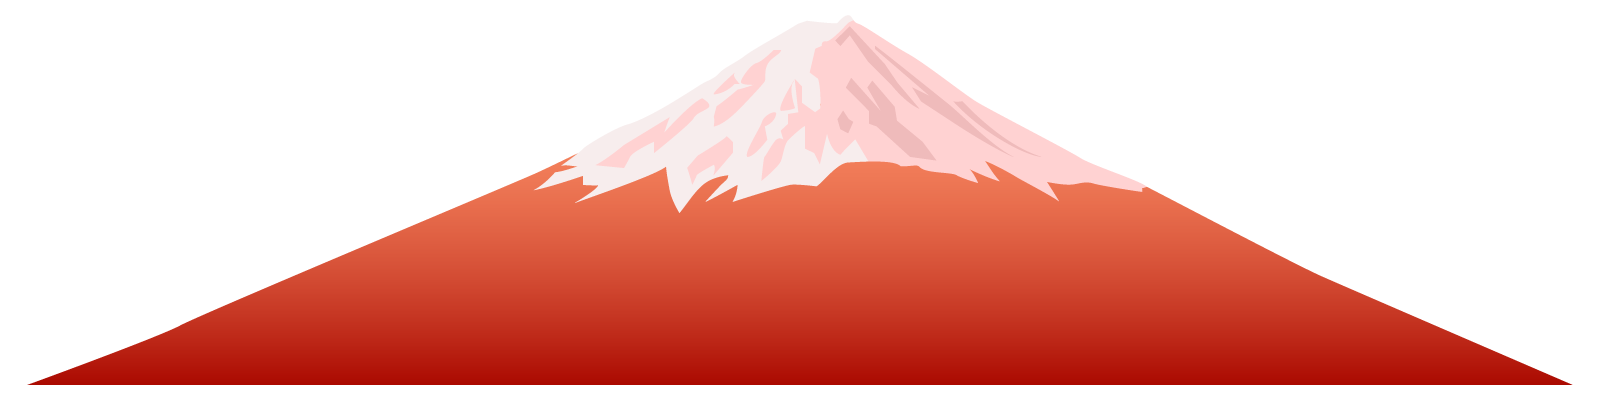 お正月・富士山の無料イラスト1-2